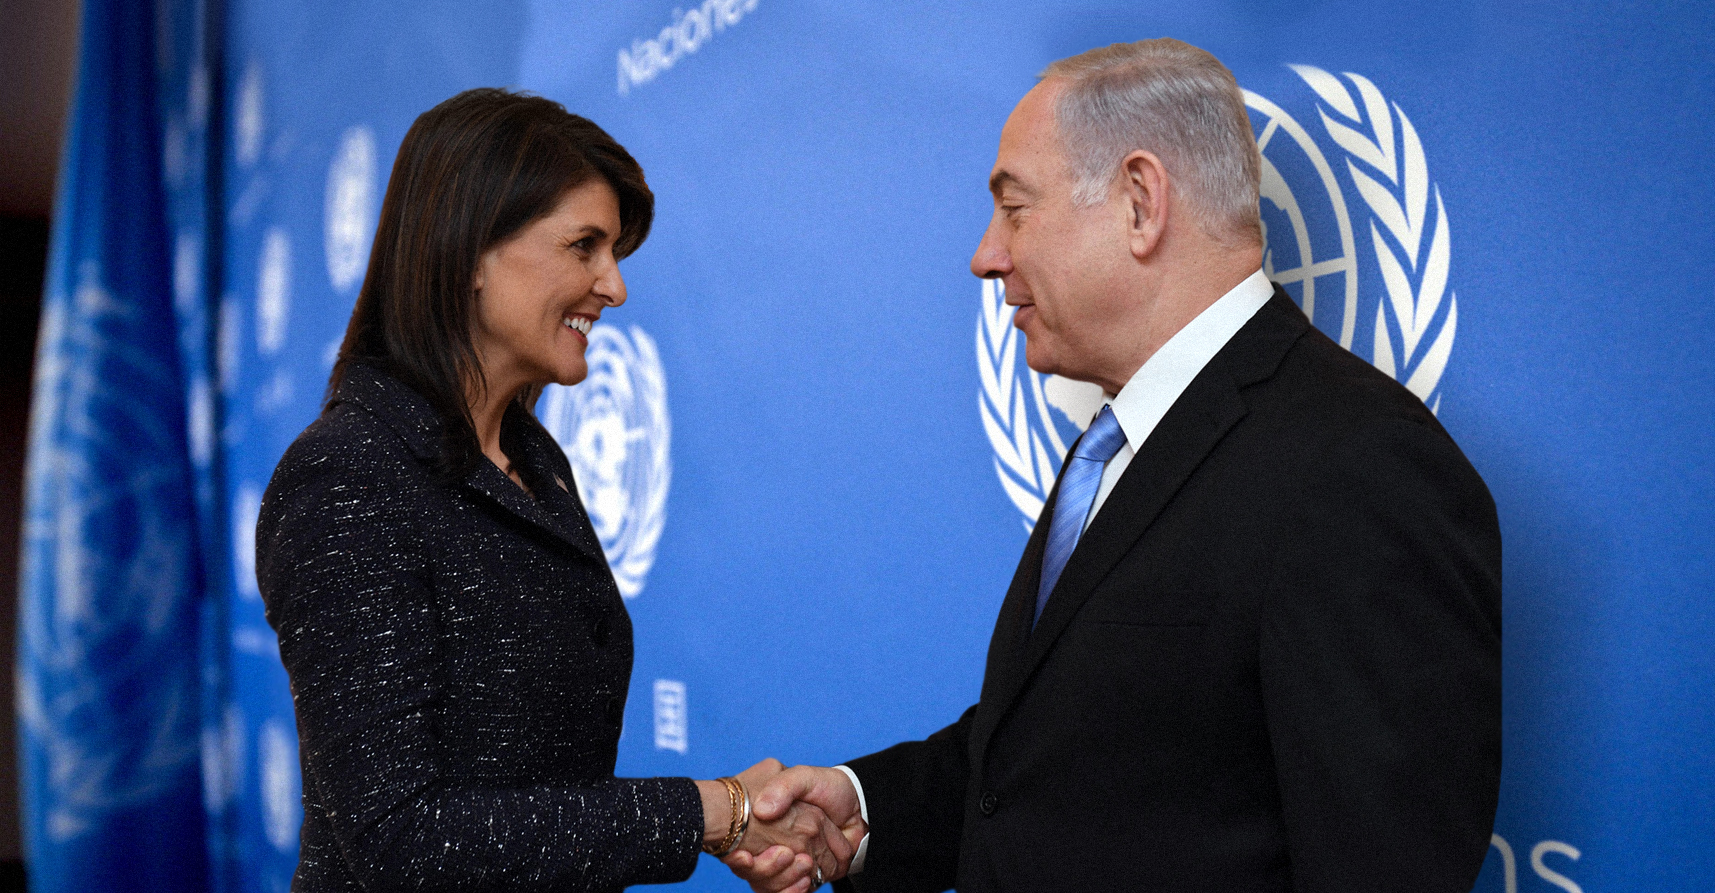 صورة إسرائيل تستغني عن مندوبها في الأمم المتحدة لأن نيكي هايلي تكفي وزيادة